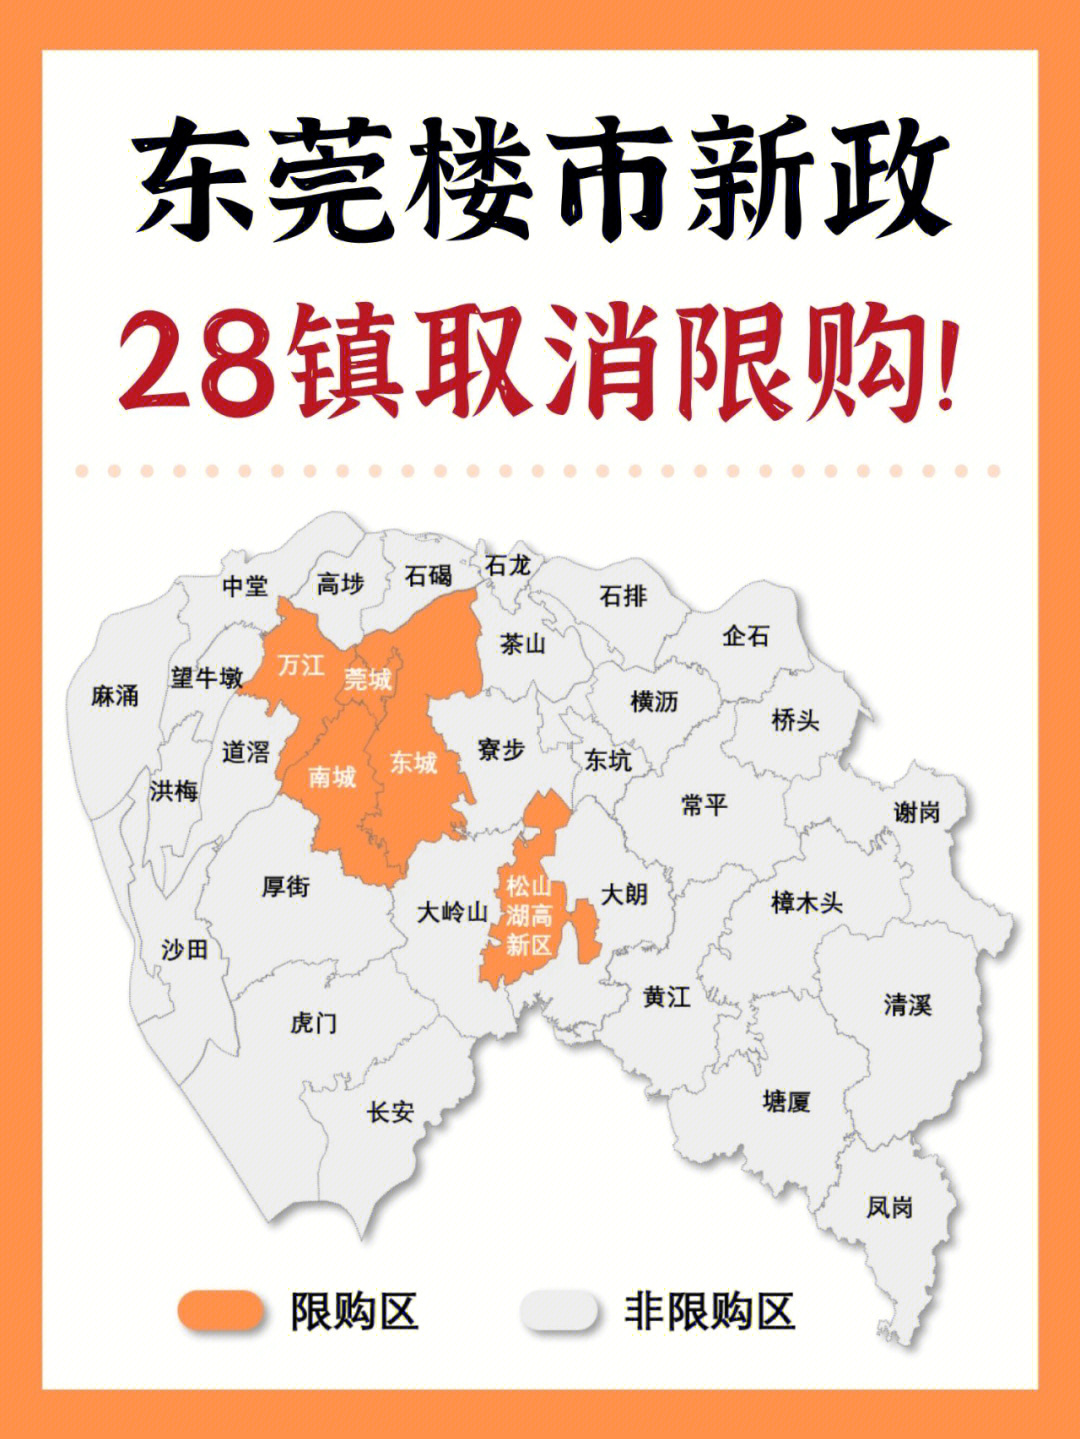 东莞限购区域图2020图片